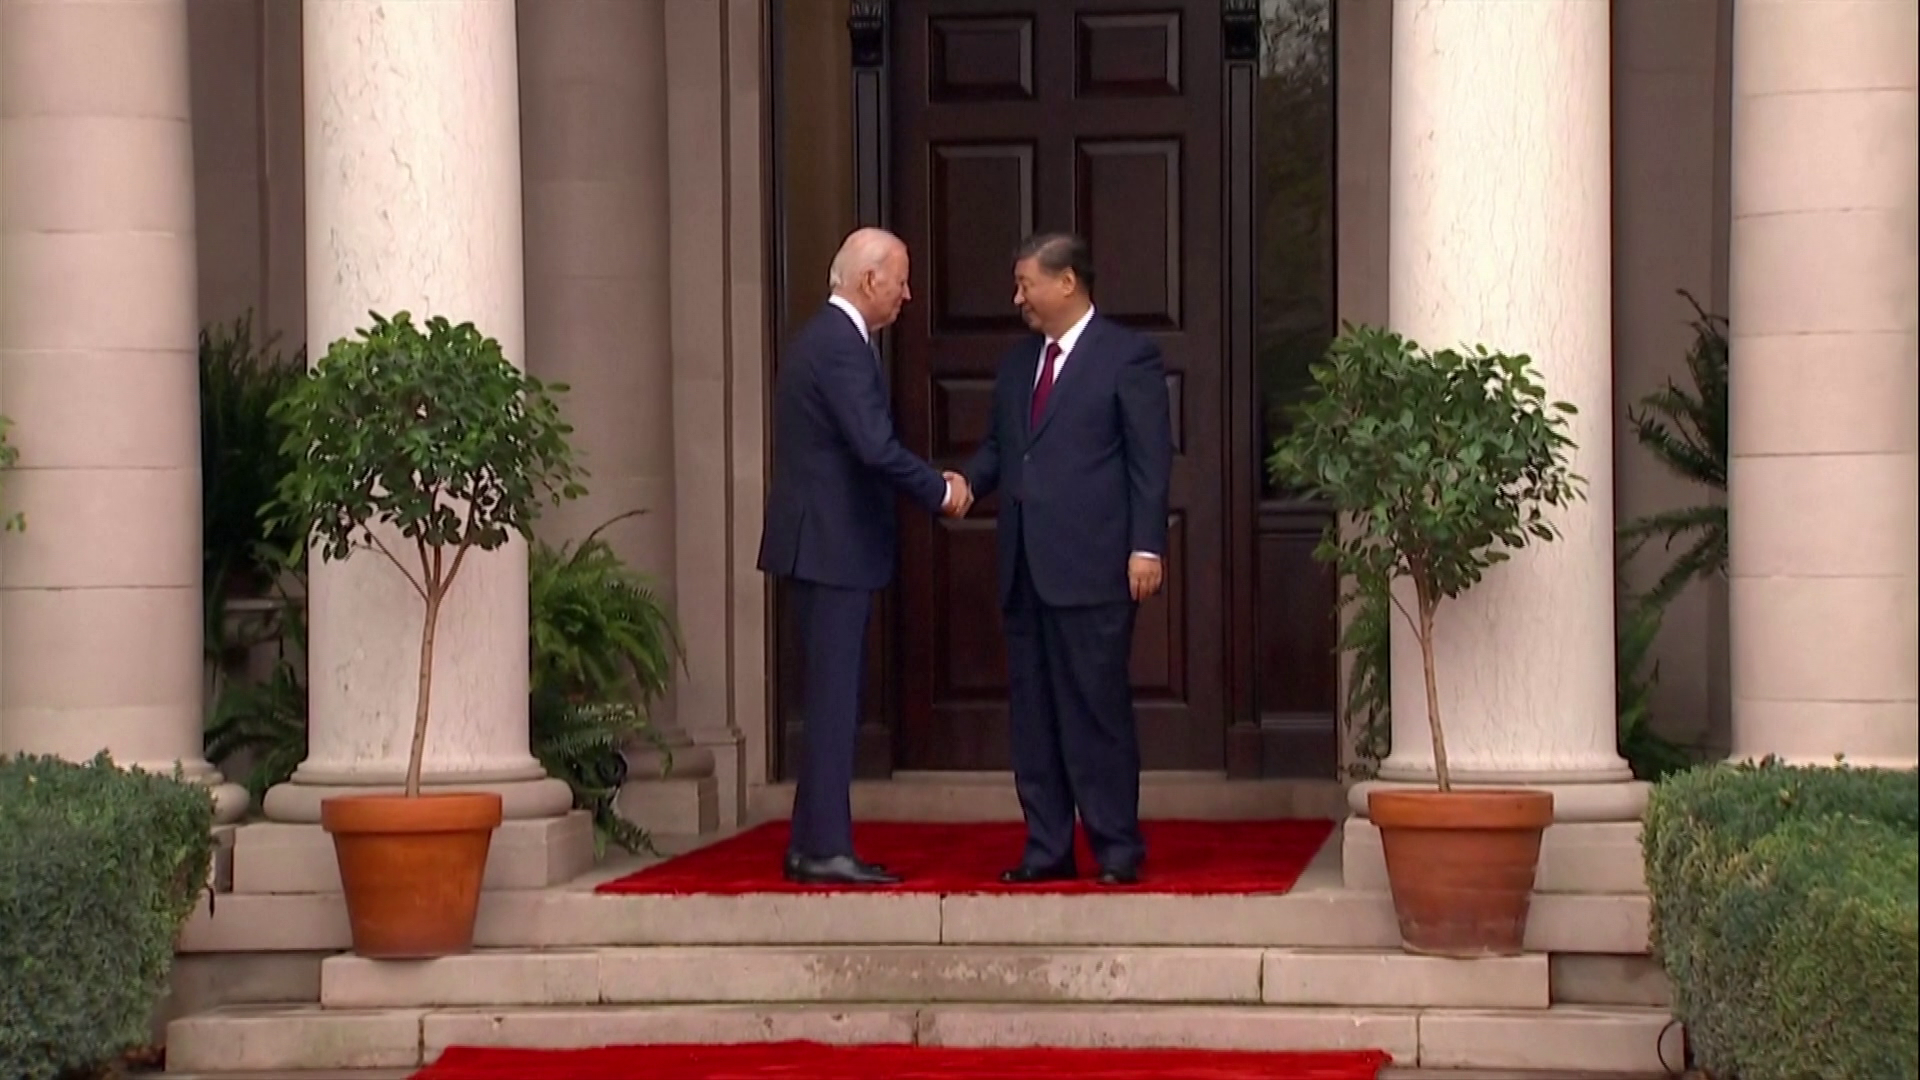 Eldurmolt Joe Biden a kínai államfővel való találkozója során és ez még nem minden + videók